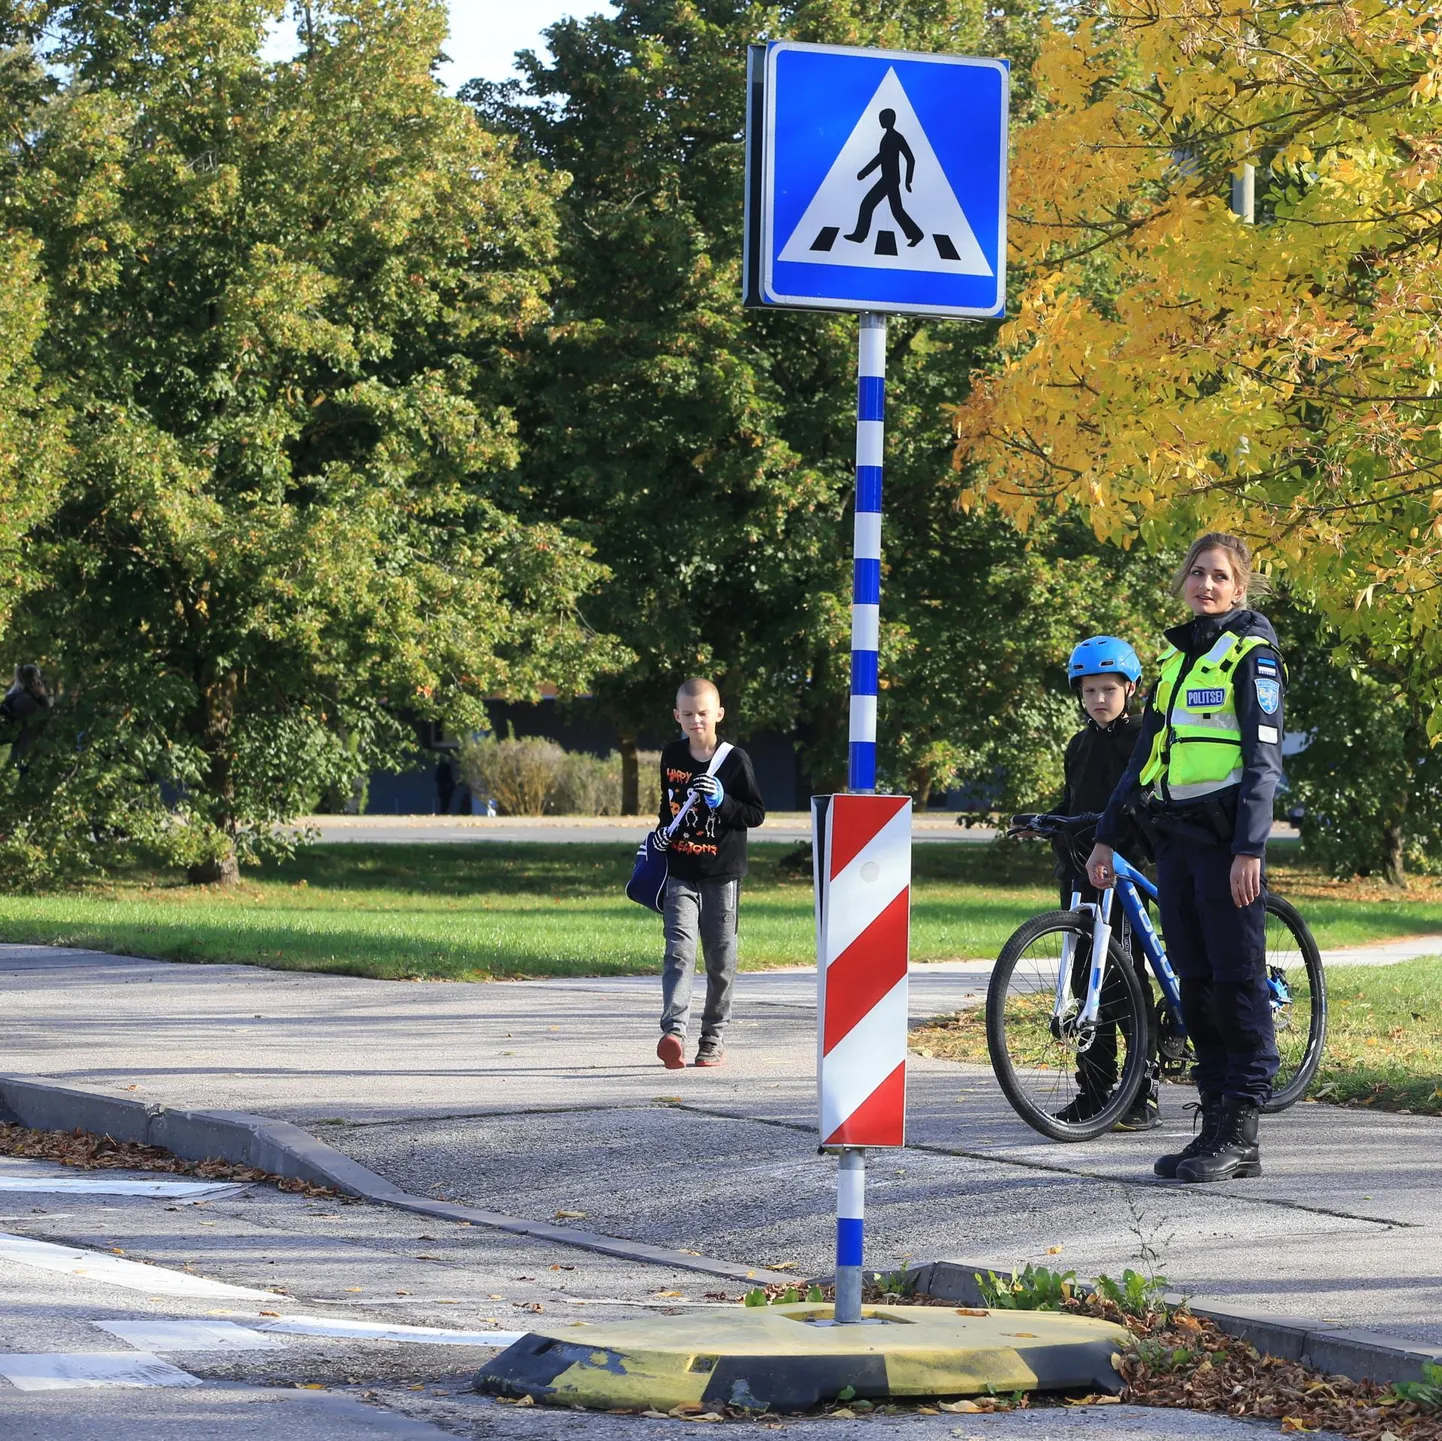 Reguleerimata ülekäigurajal peab rattur liiklejatele teed andma. Pilt on illustreeriv.